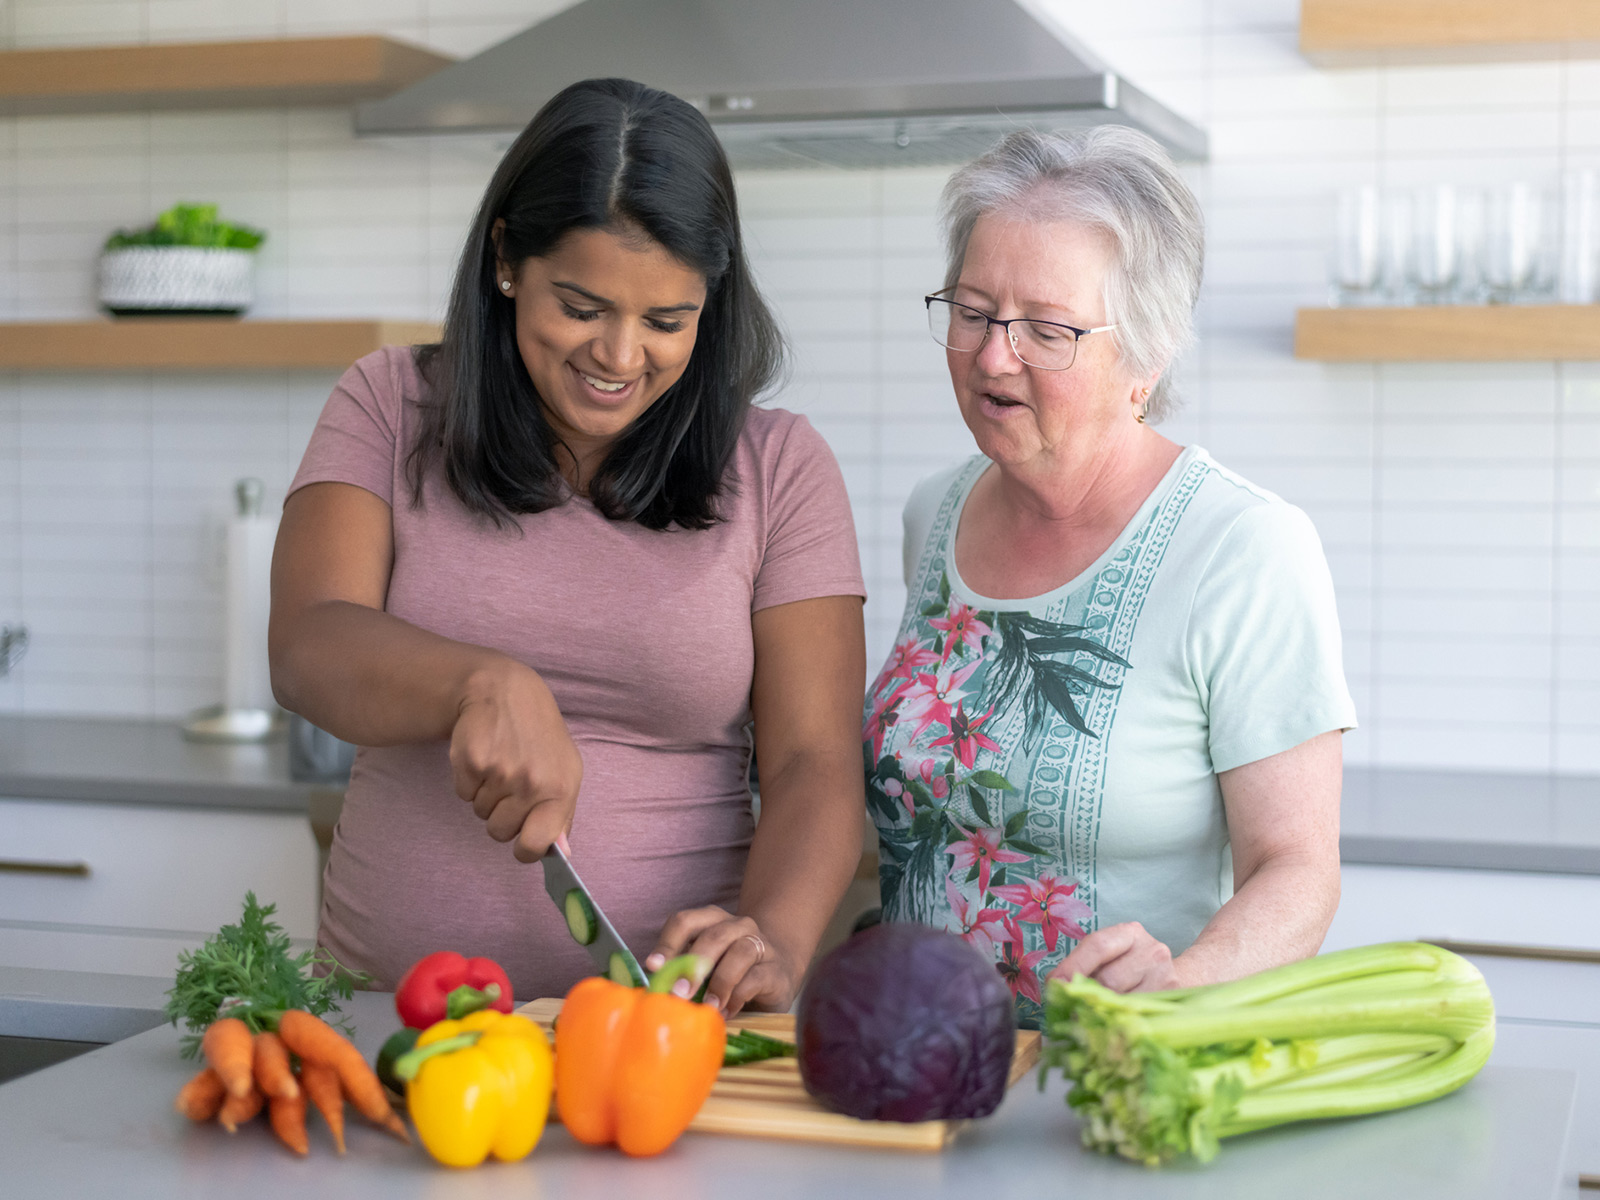 Una mujer embarazada corta vegetales en trozos en la encimera de su cocina mientras una mujer mayor observa